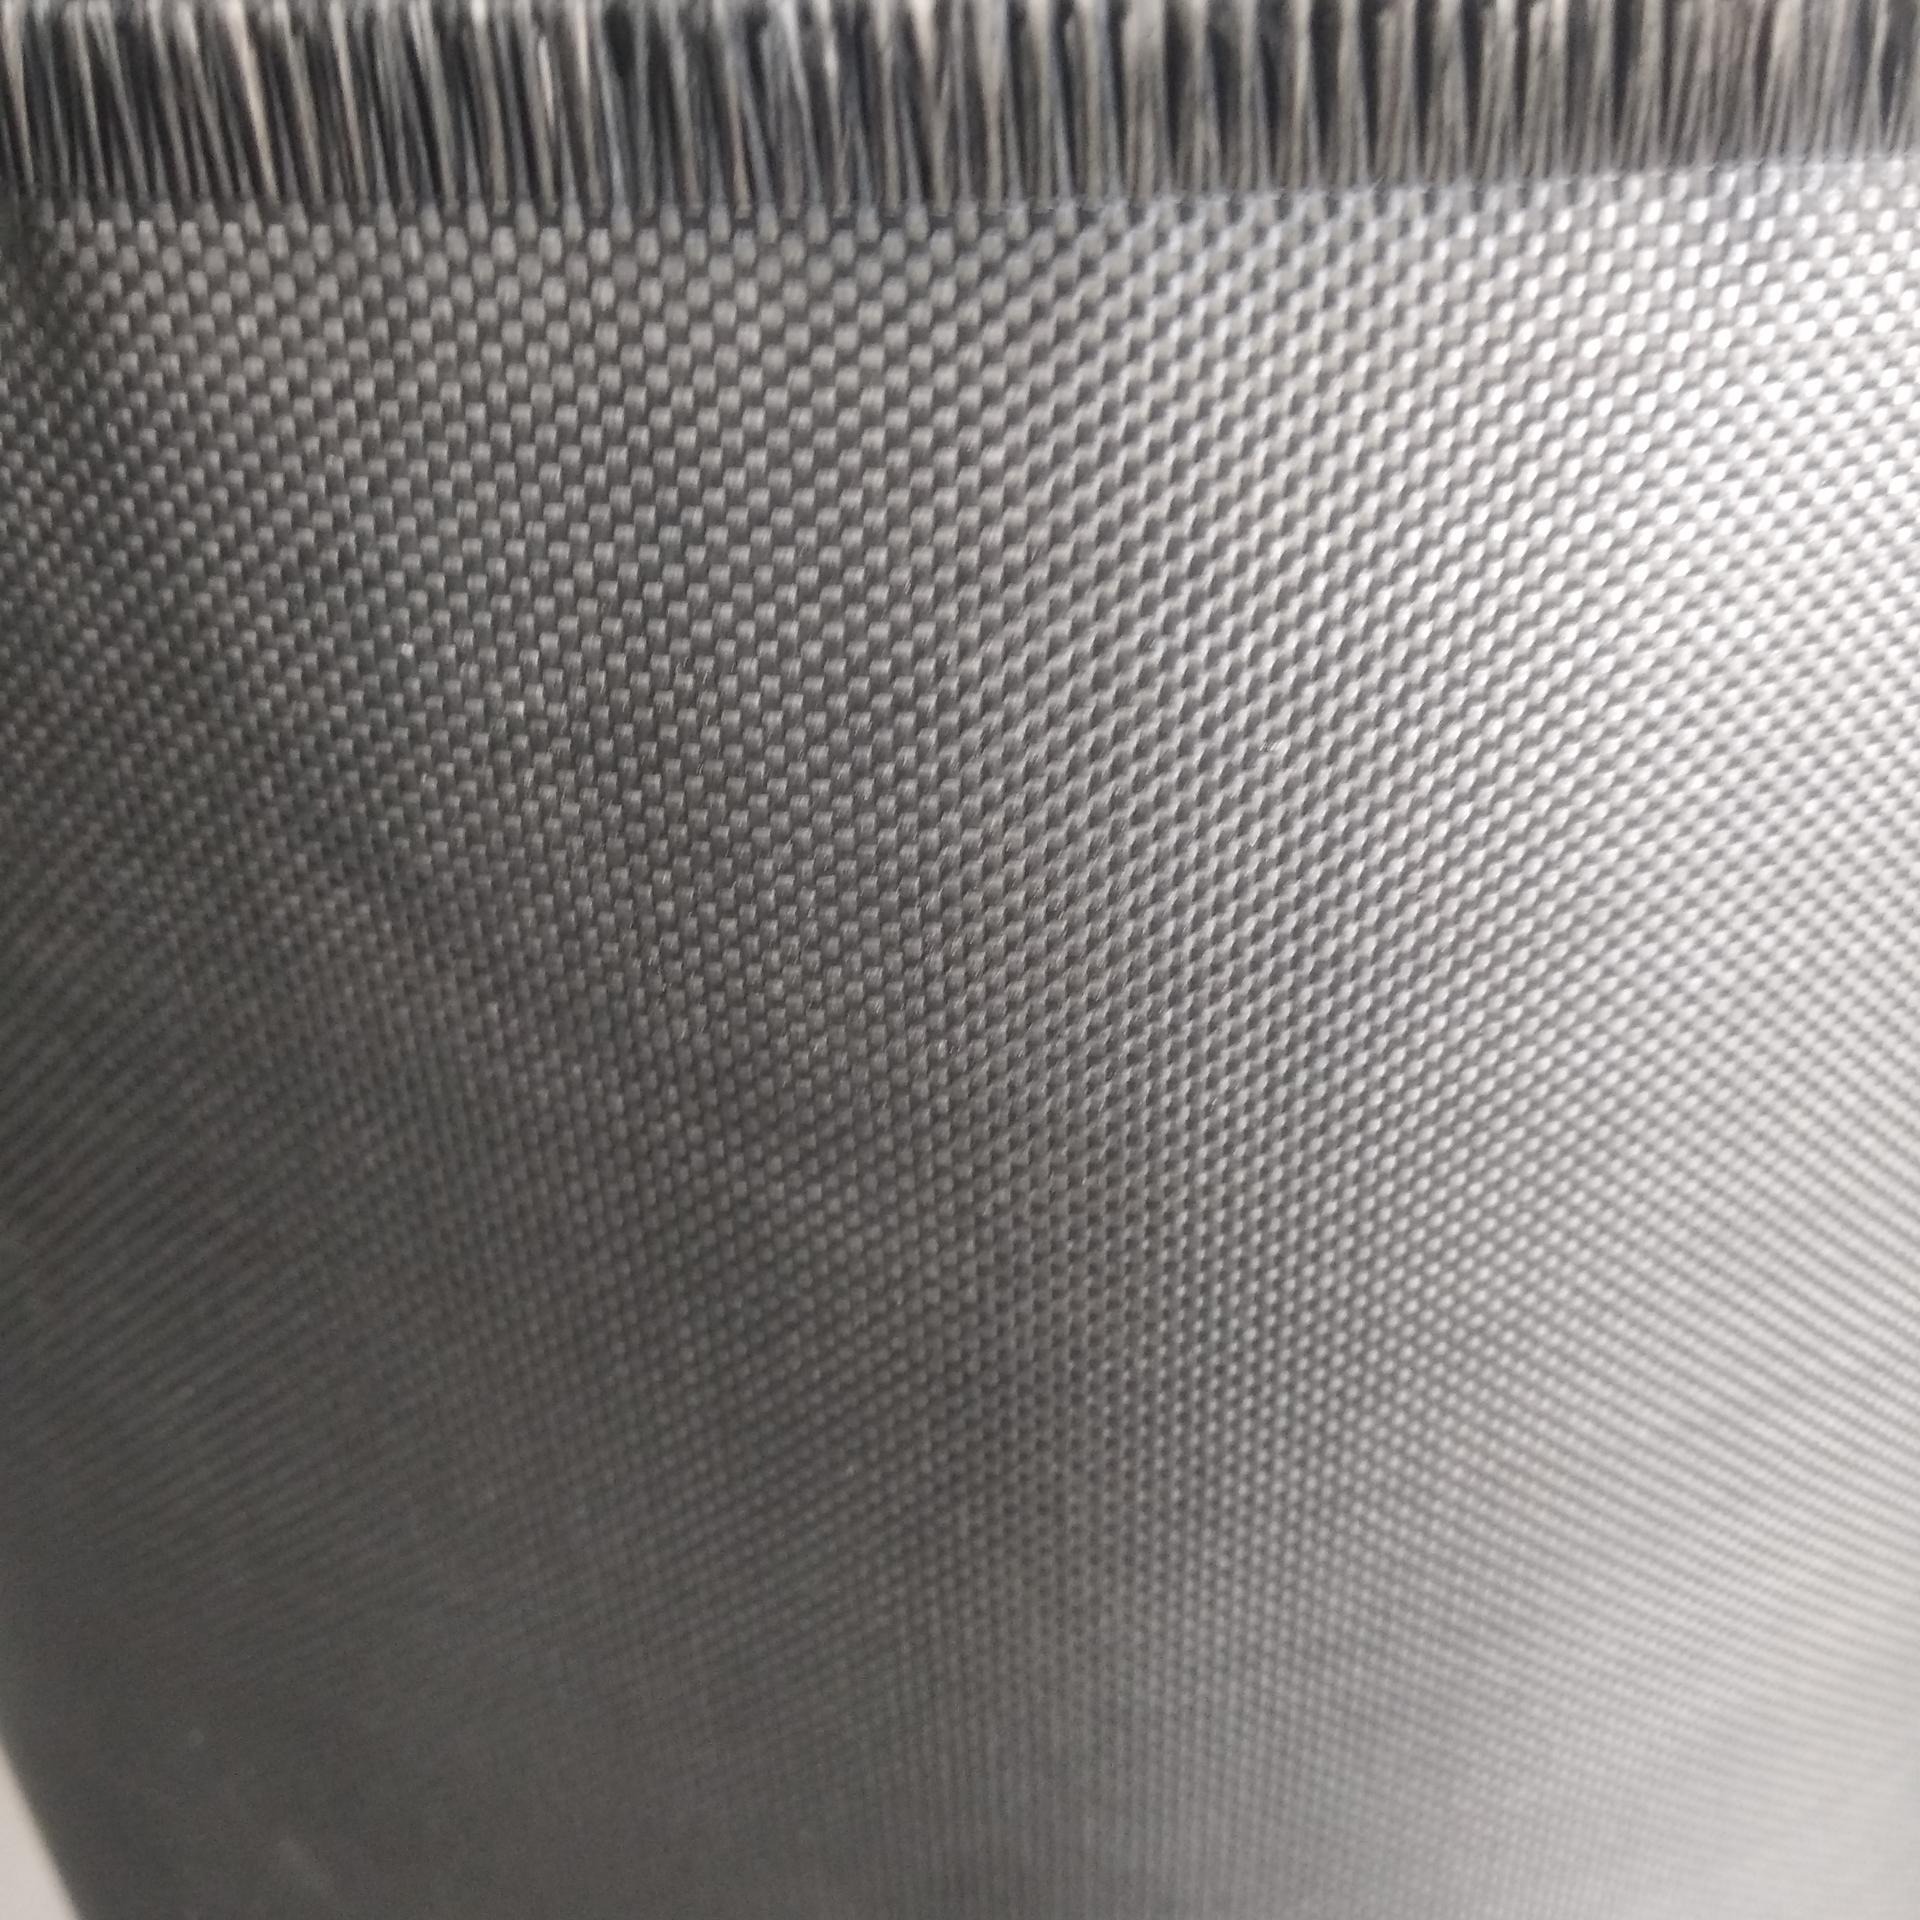 炭黑玻璃纤维布生产厂家 国标炭黑玻璃纤维布价格 安朗 炭黑玻璃布厂家图片